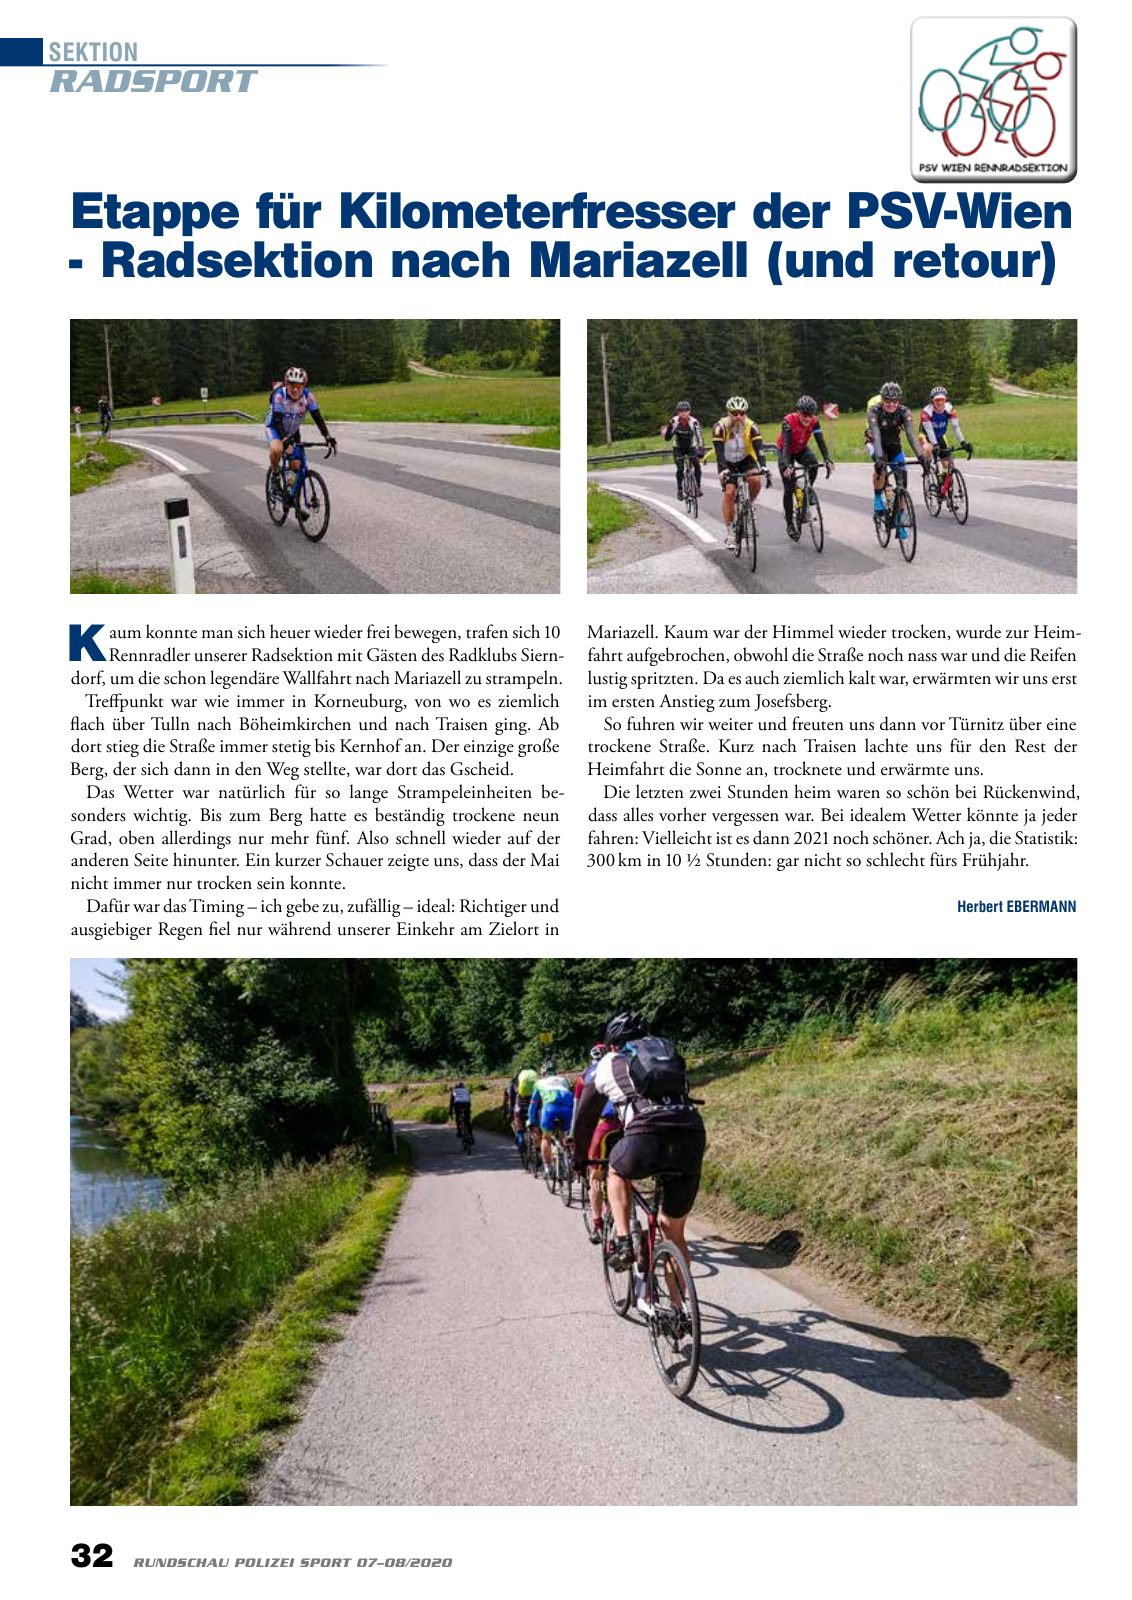 Vorschau Rundschau Polizei Sport 07-08/2020 Seite 32